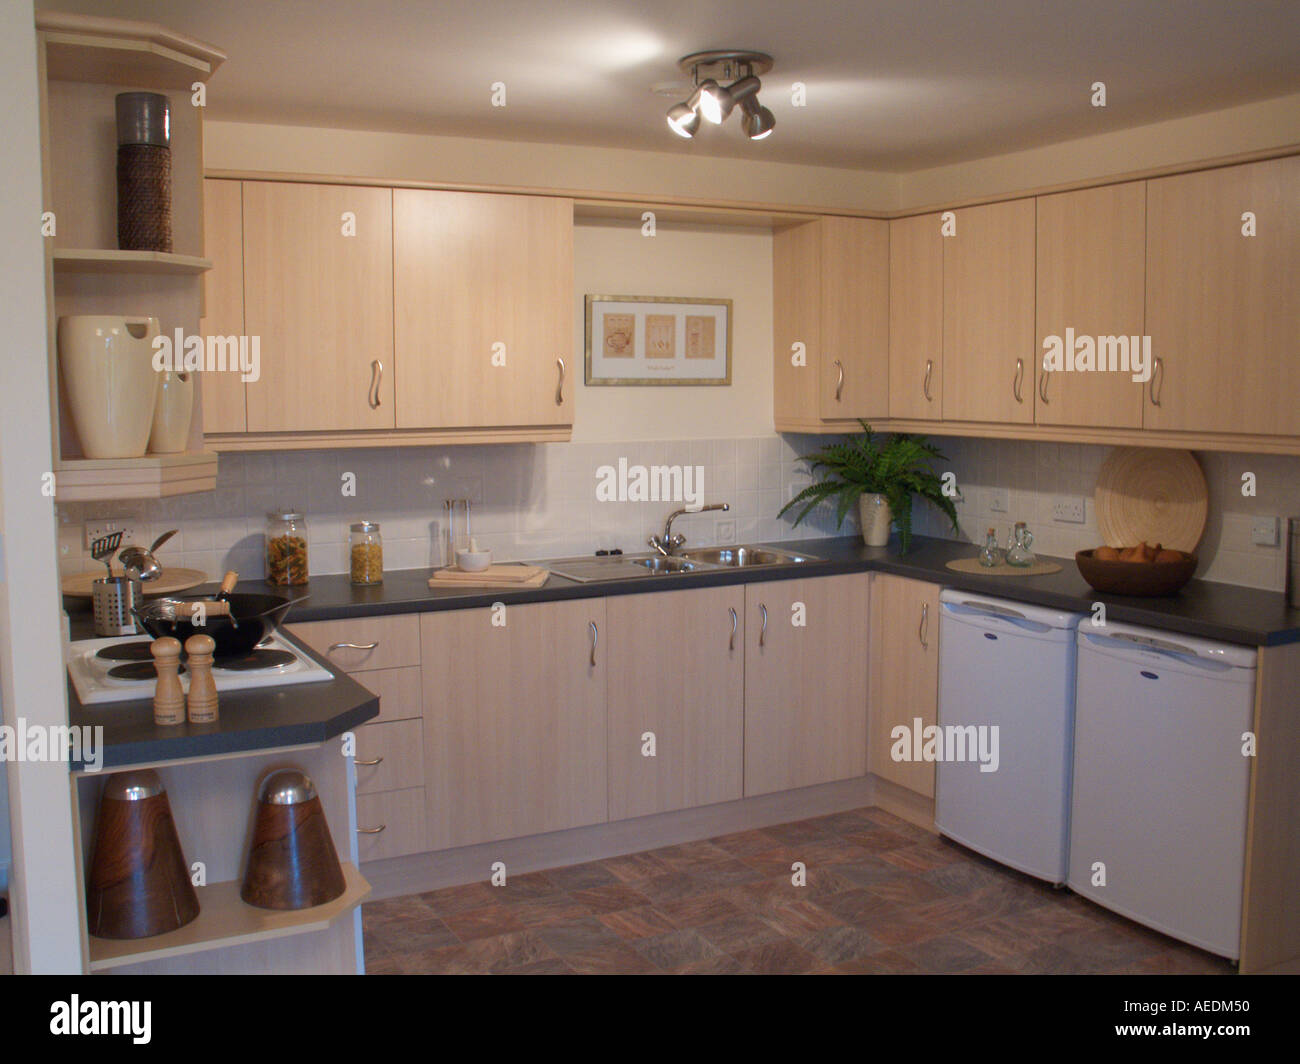 kitchen modern design cupboards [home interior] Stock Photo